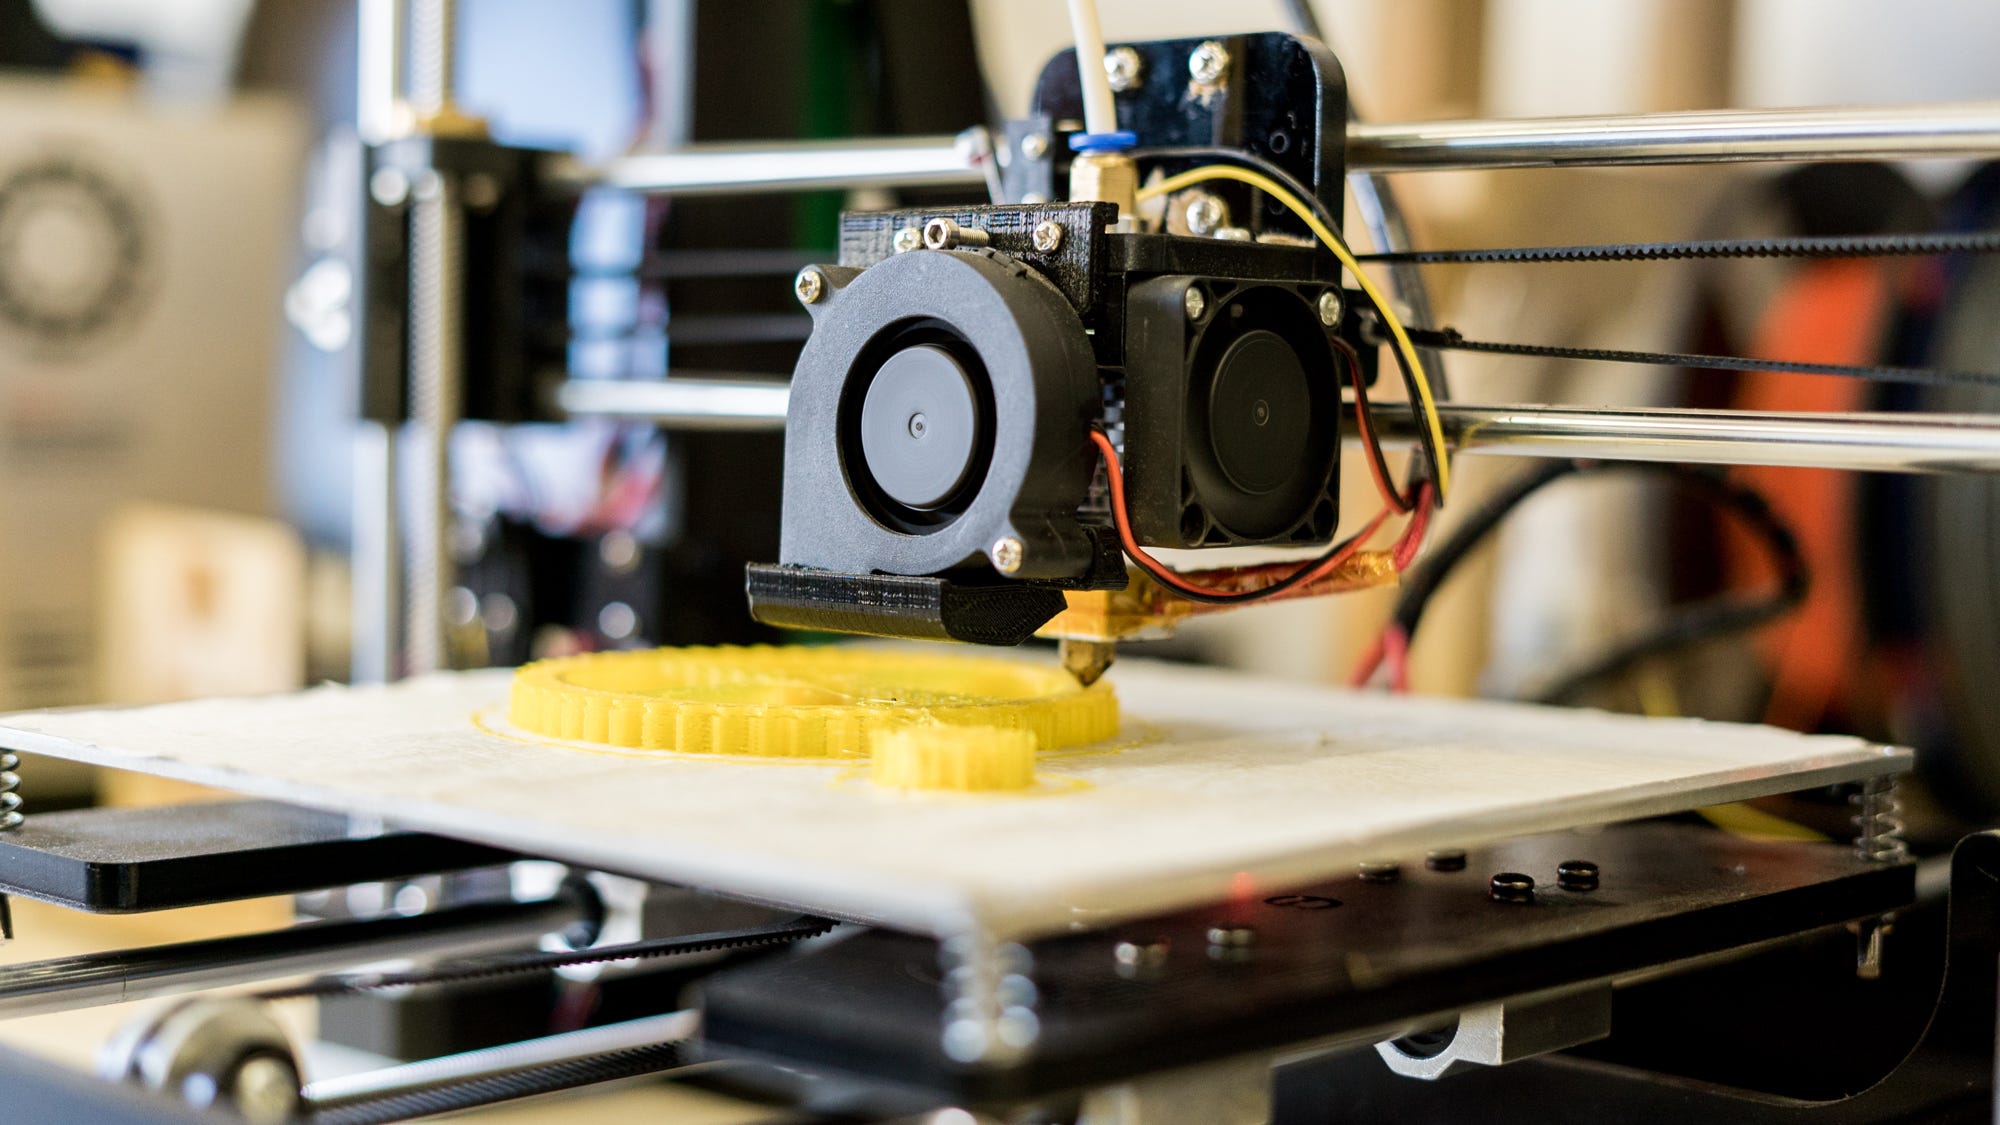 Impressoras 3D: O seu papel no mundo tridimensional | by FAB LAB LIVRE SP |  Medium